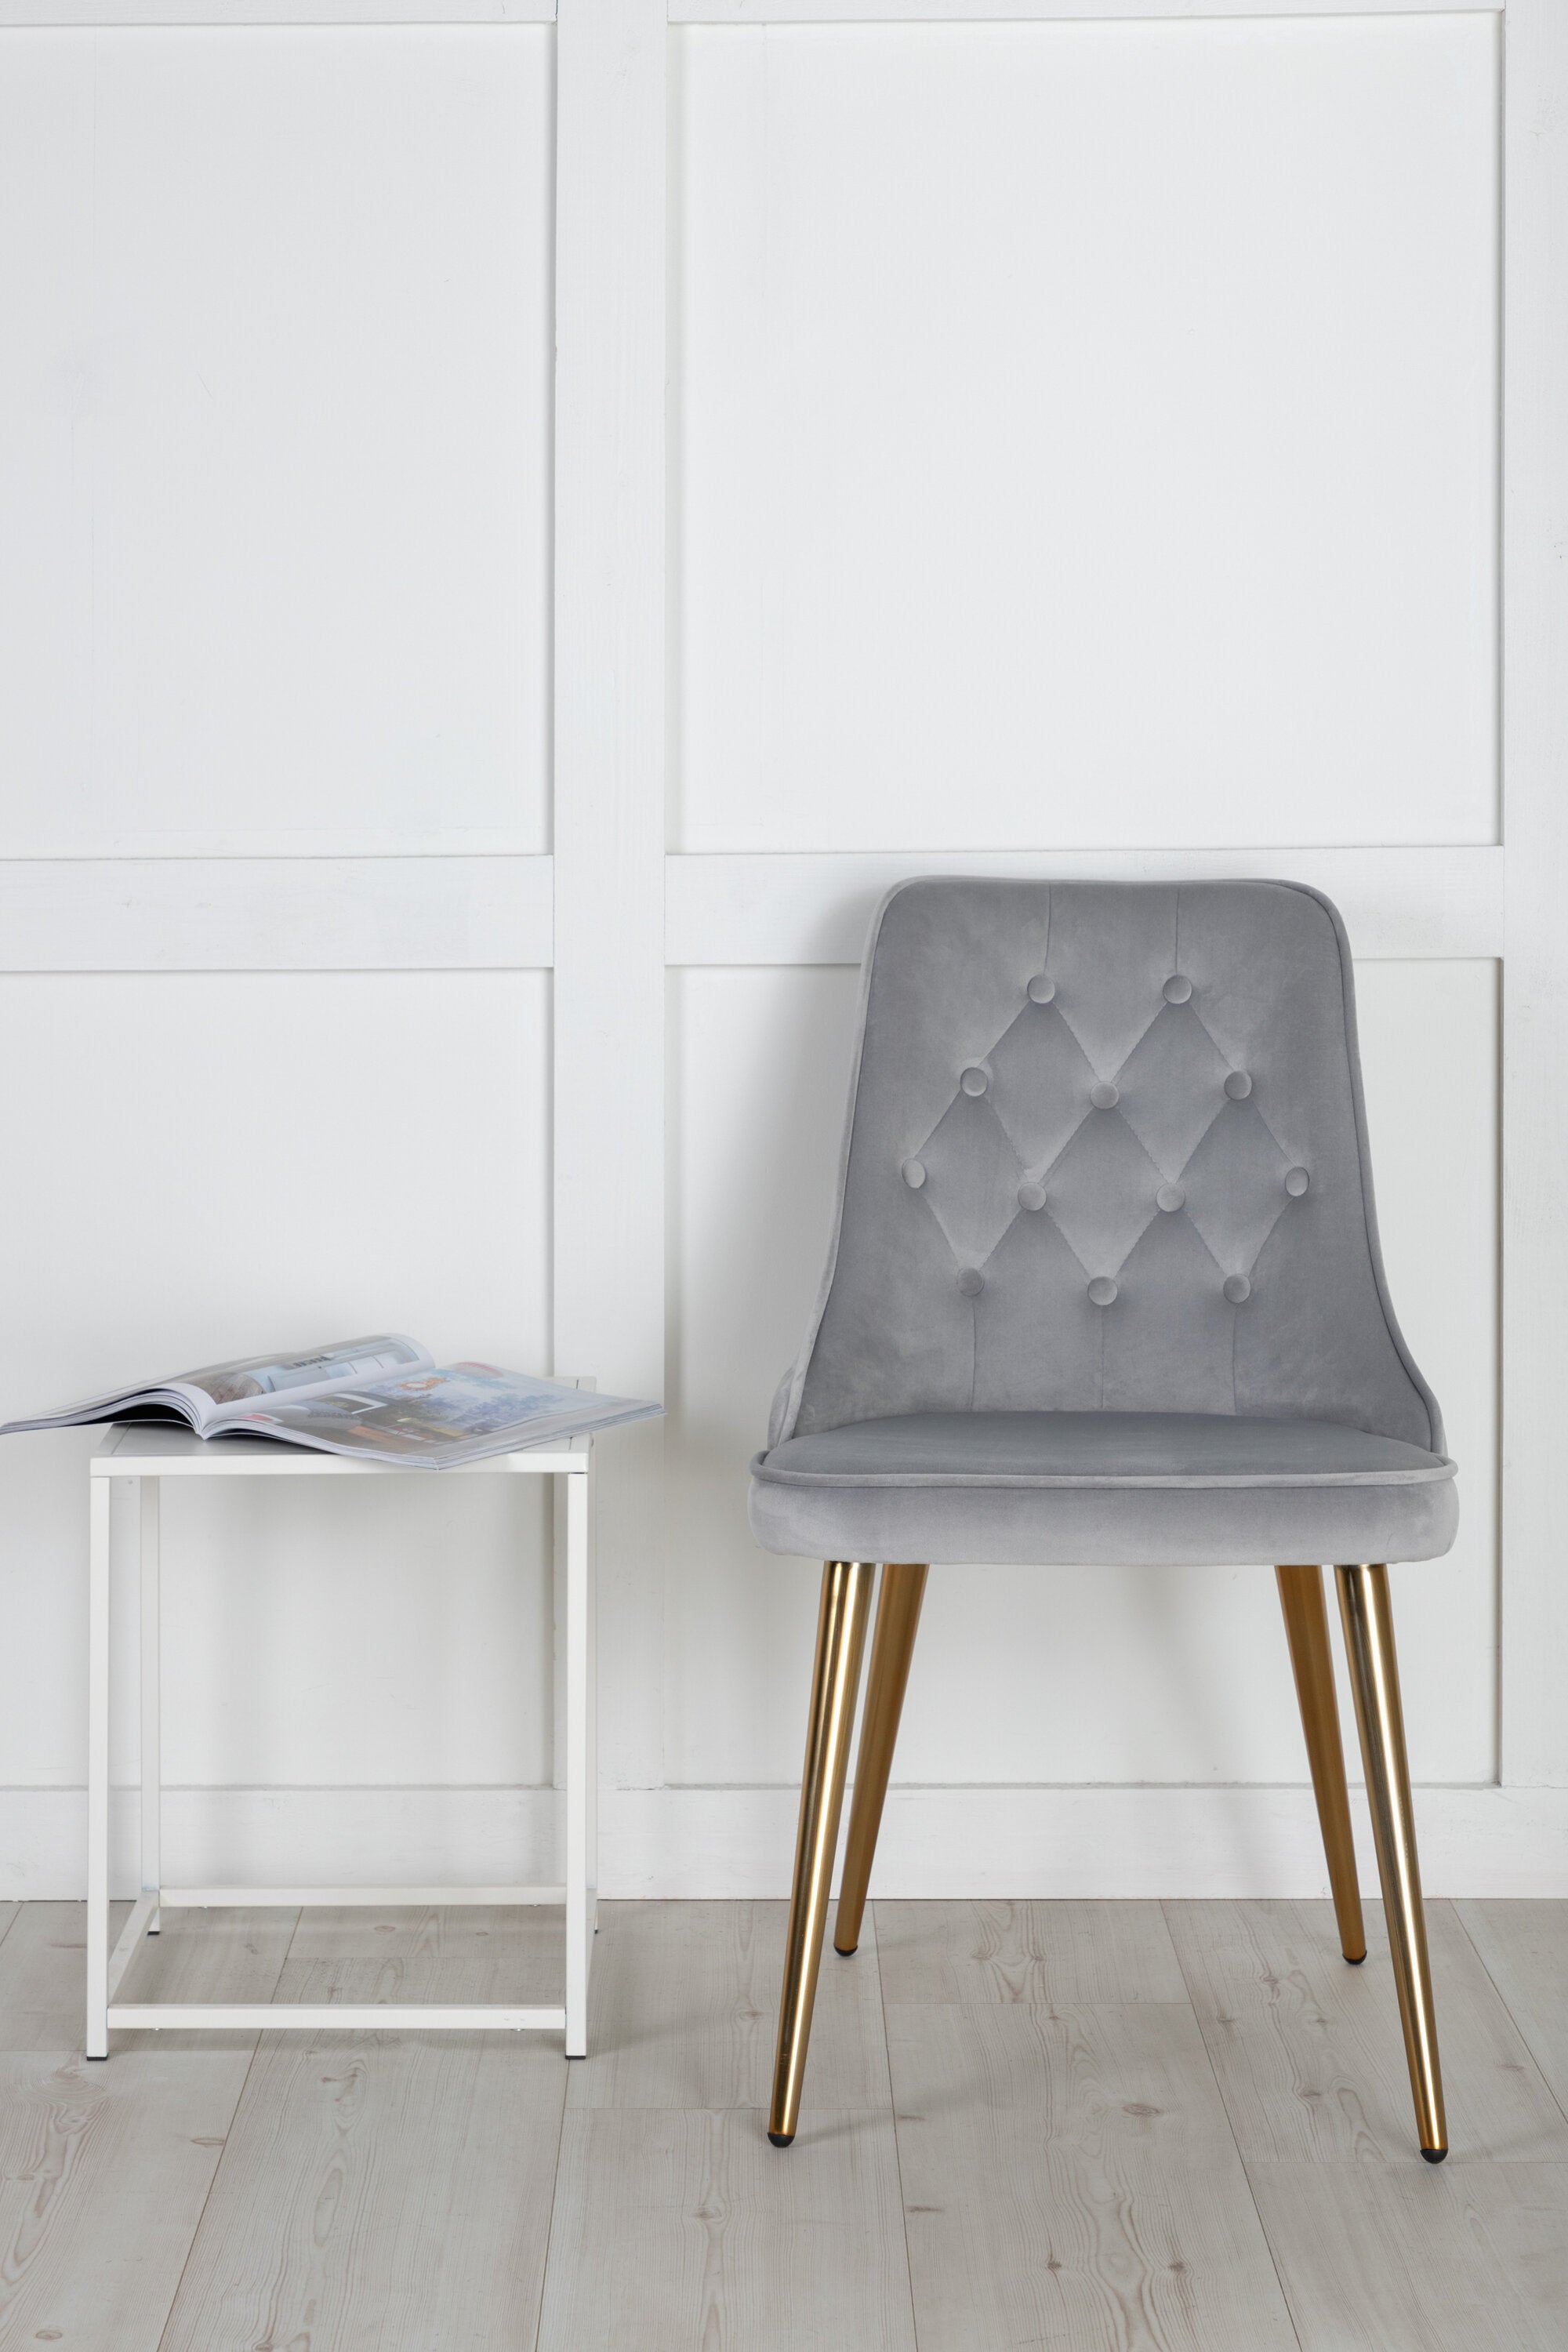 Velvet Deluxe Stuhl in Grau / Gold präsentiert im Onlineshop von KAQTU Design AG. Stuhl ist von Venture Home